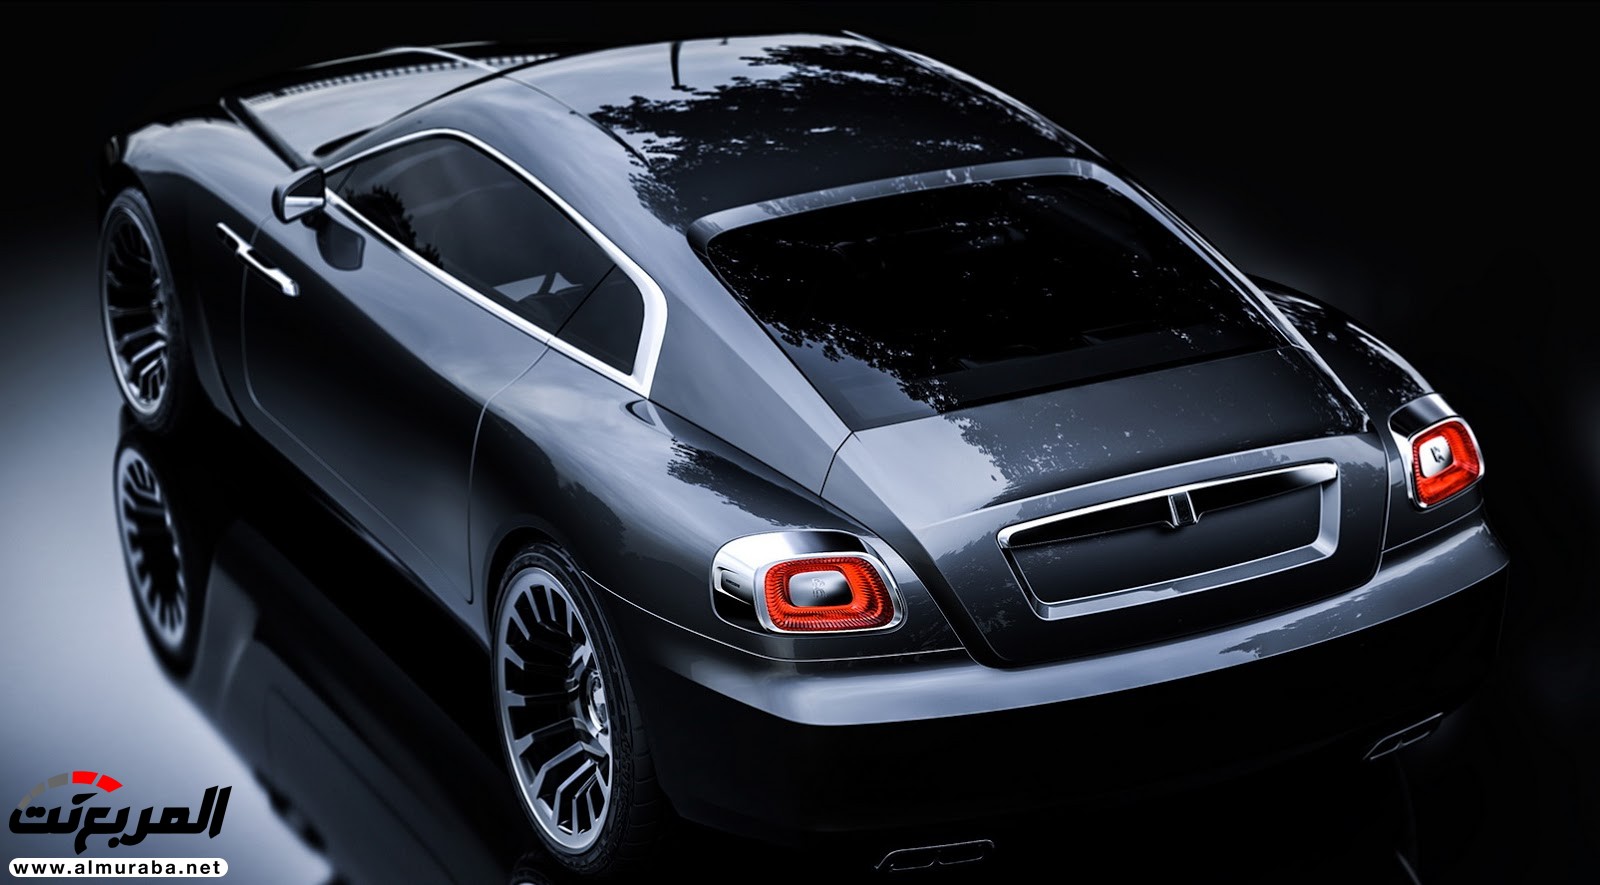 "صور افتراضية" لما يمكن أن تبدو عليه "رولز رويس" رايث كوبيه 2020 Rolls-Royce Wraith Coupe 70